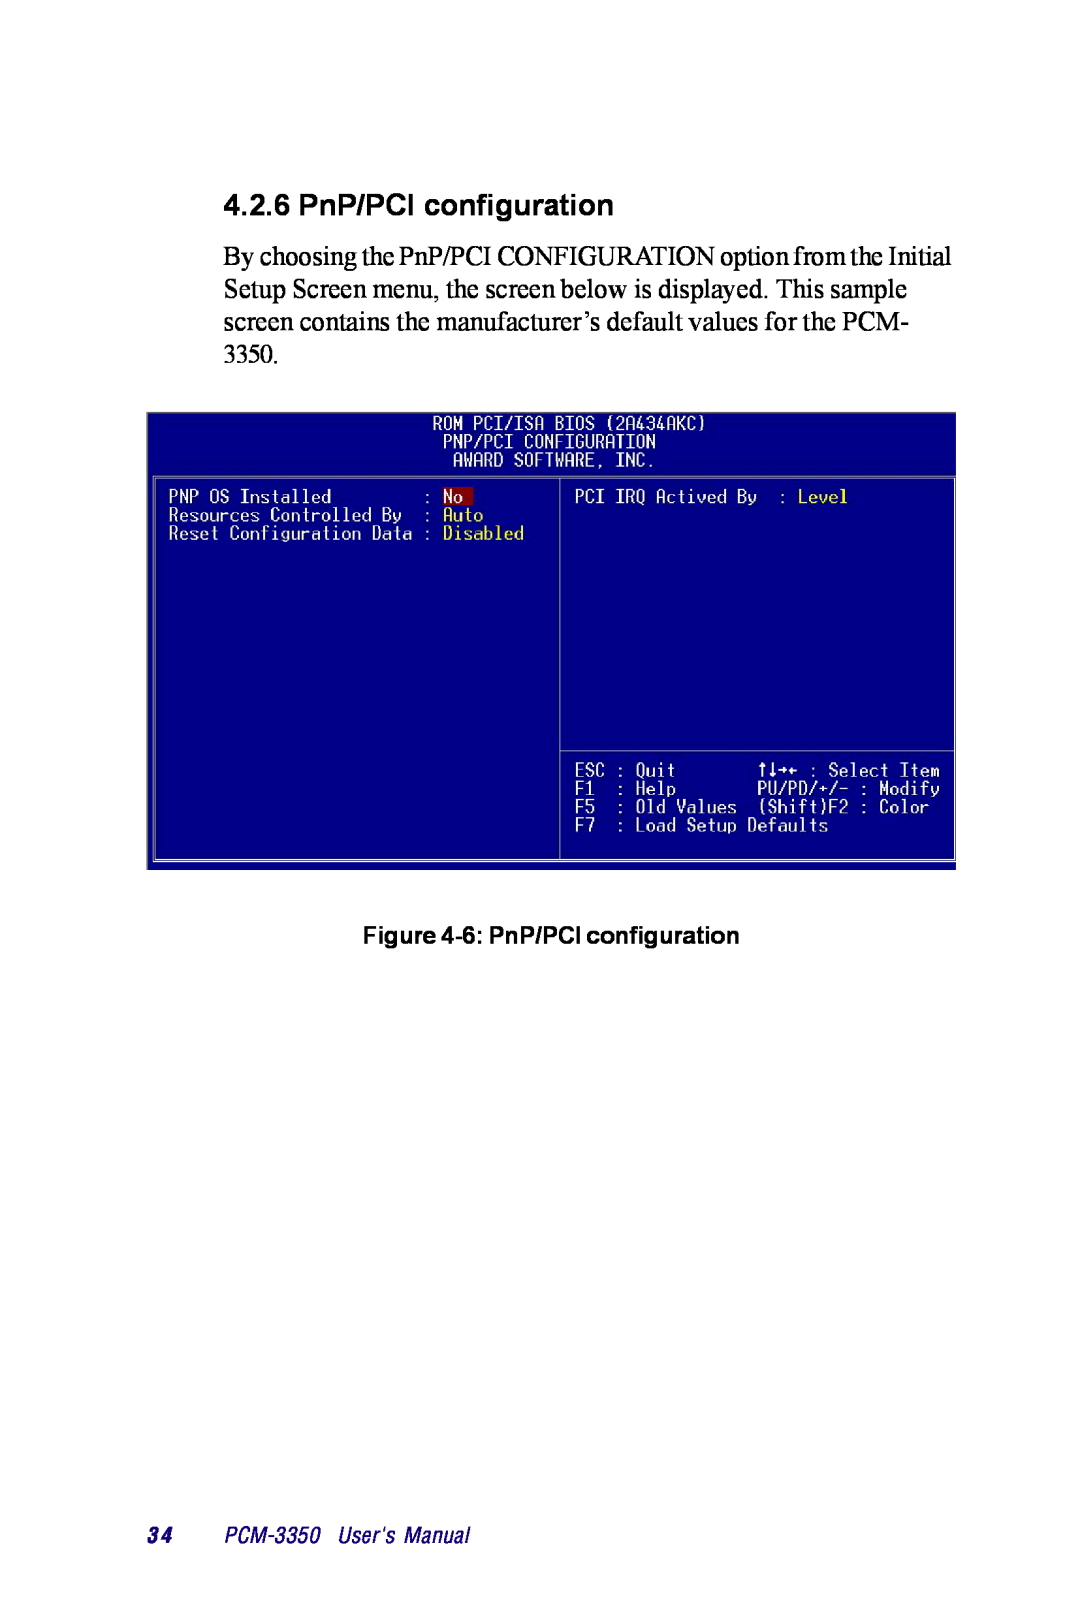 Advantech PCM-3350 Series user manual 4.2.6 PnP/PCI configuration, 3 4 PCM-3350 Users Manual 